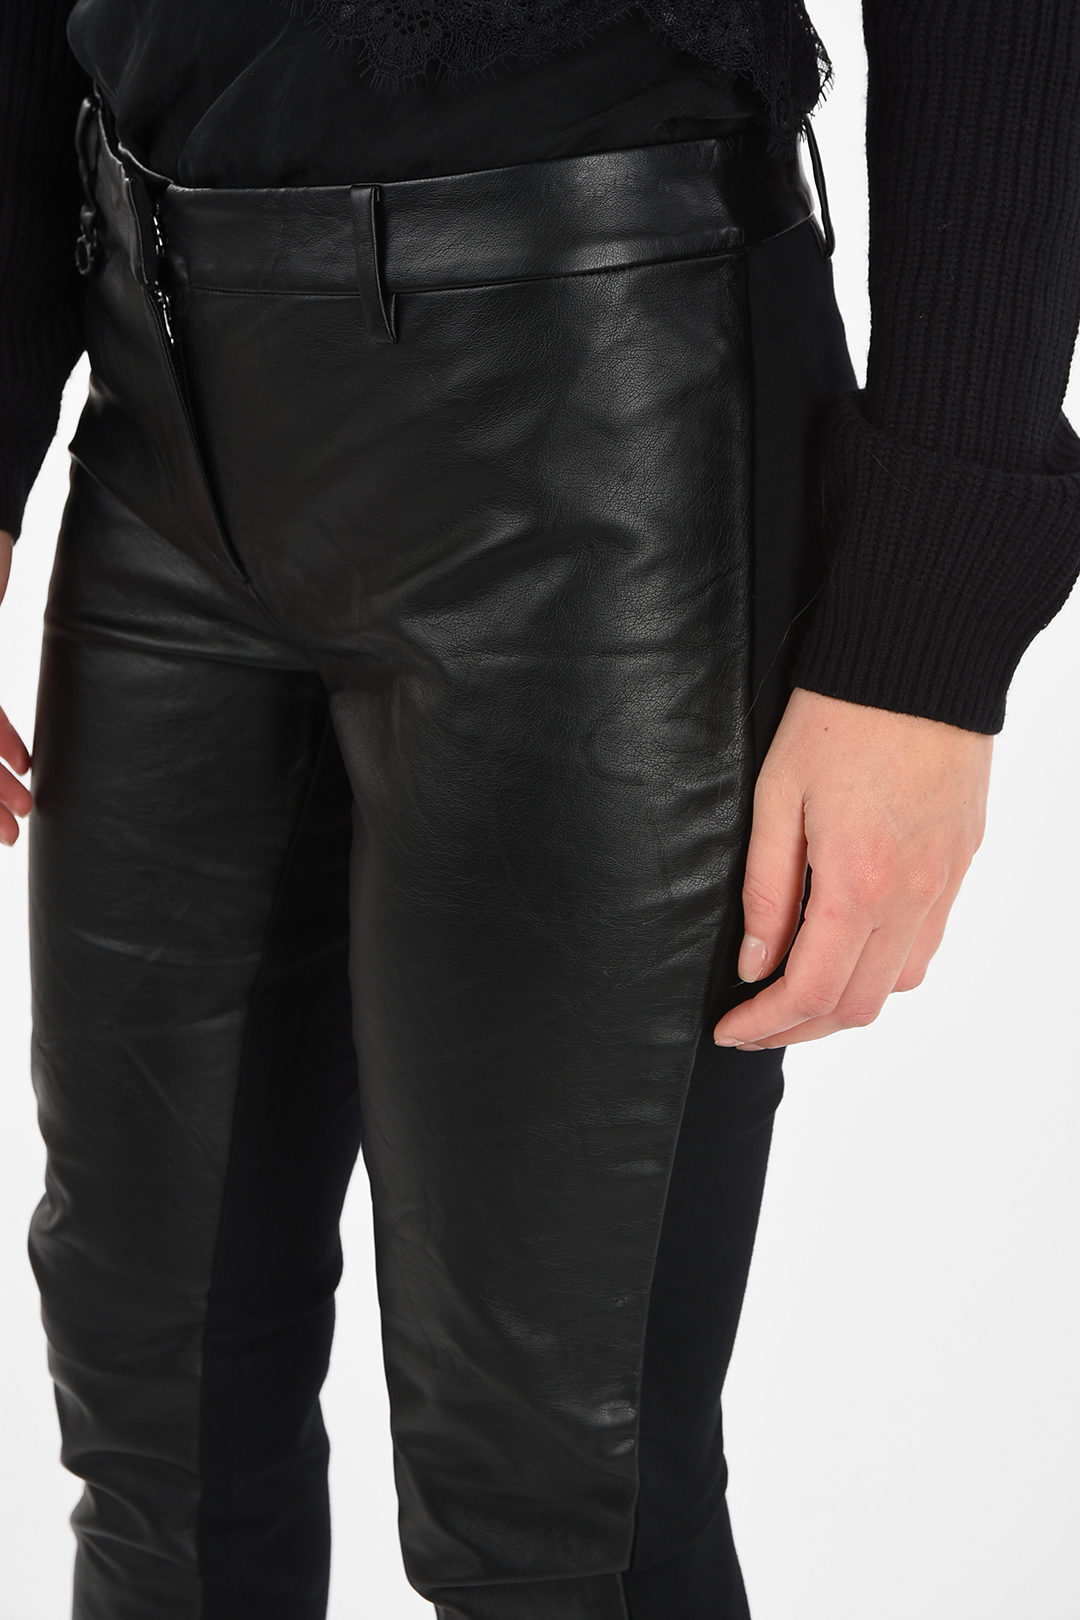 Emporio Armani PANTALONI  Leather trousers  marronebrown  Zalandode